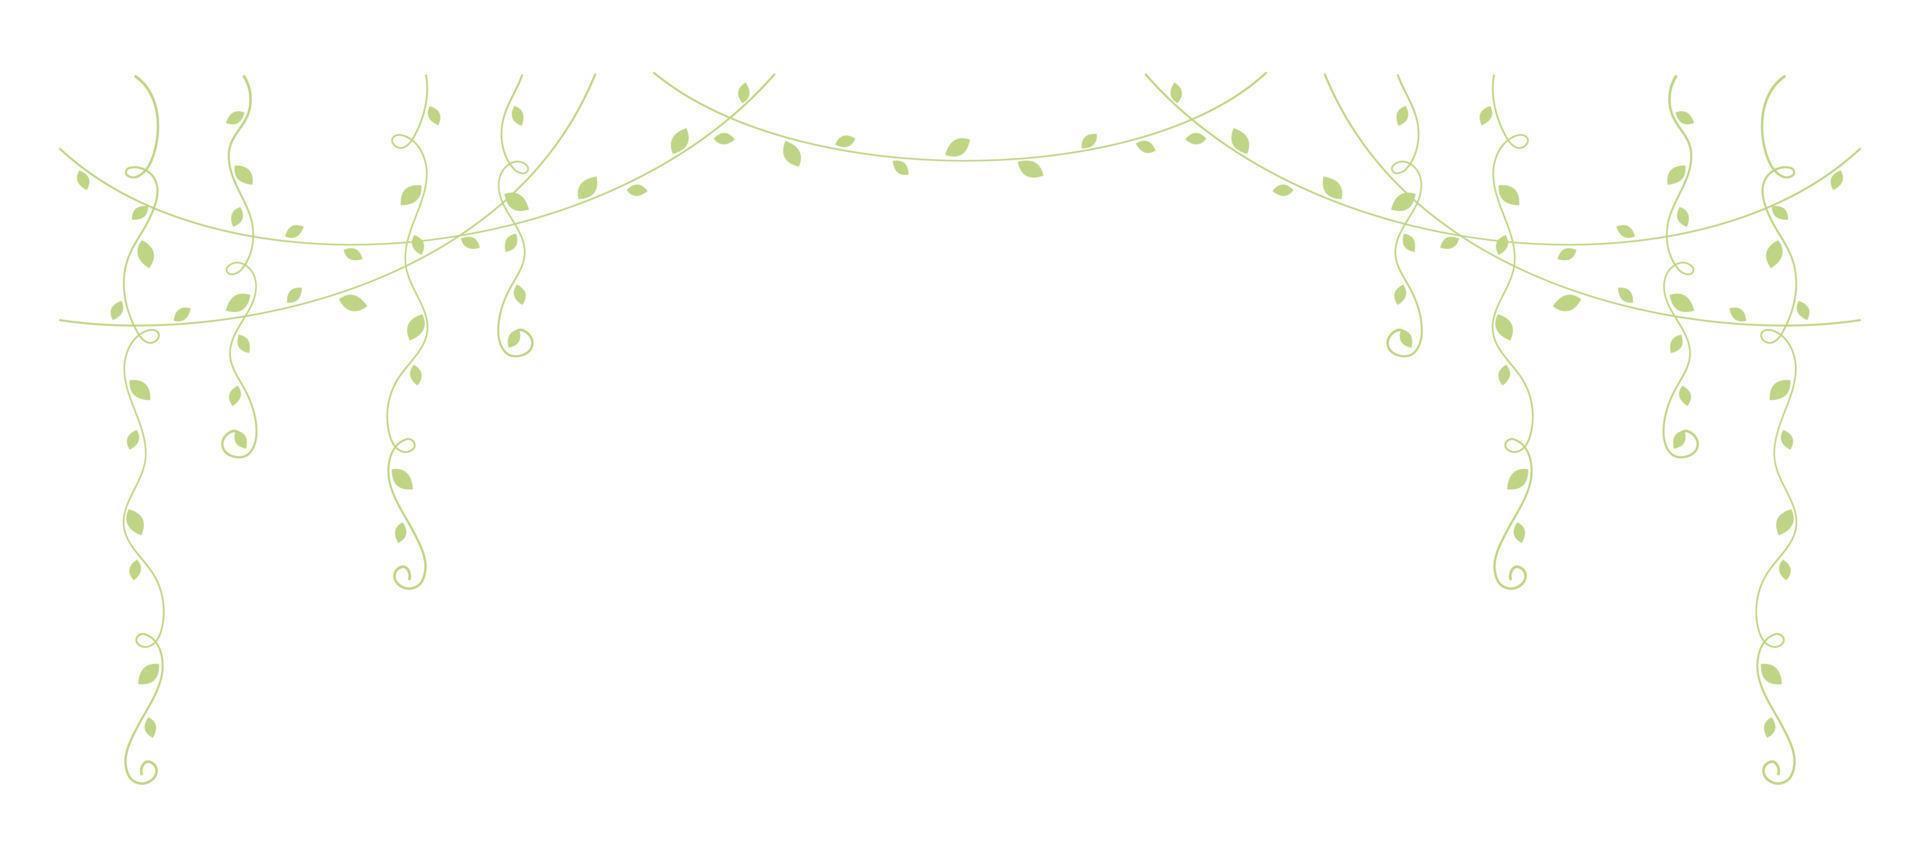 groen hangende wijnstokken vector illustratie. gemakkelijk minimaal bloemen botanisch Liaan gordijn ontwerp elementen voor de lente.